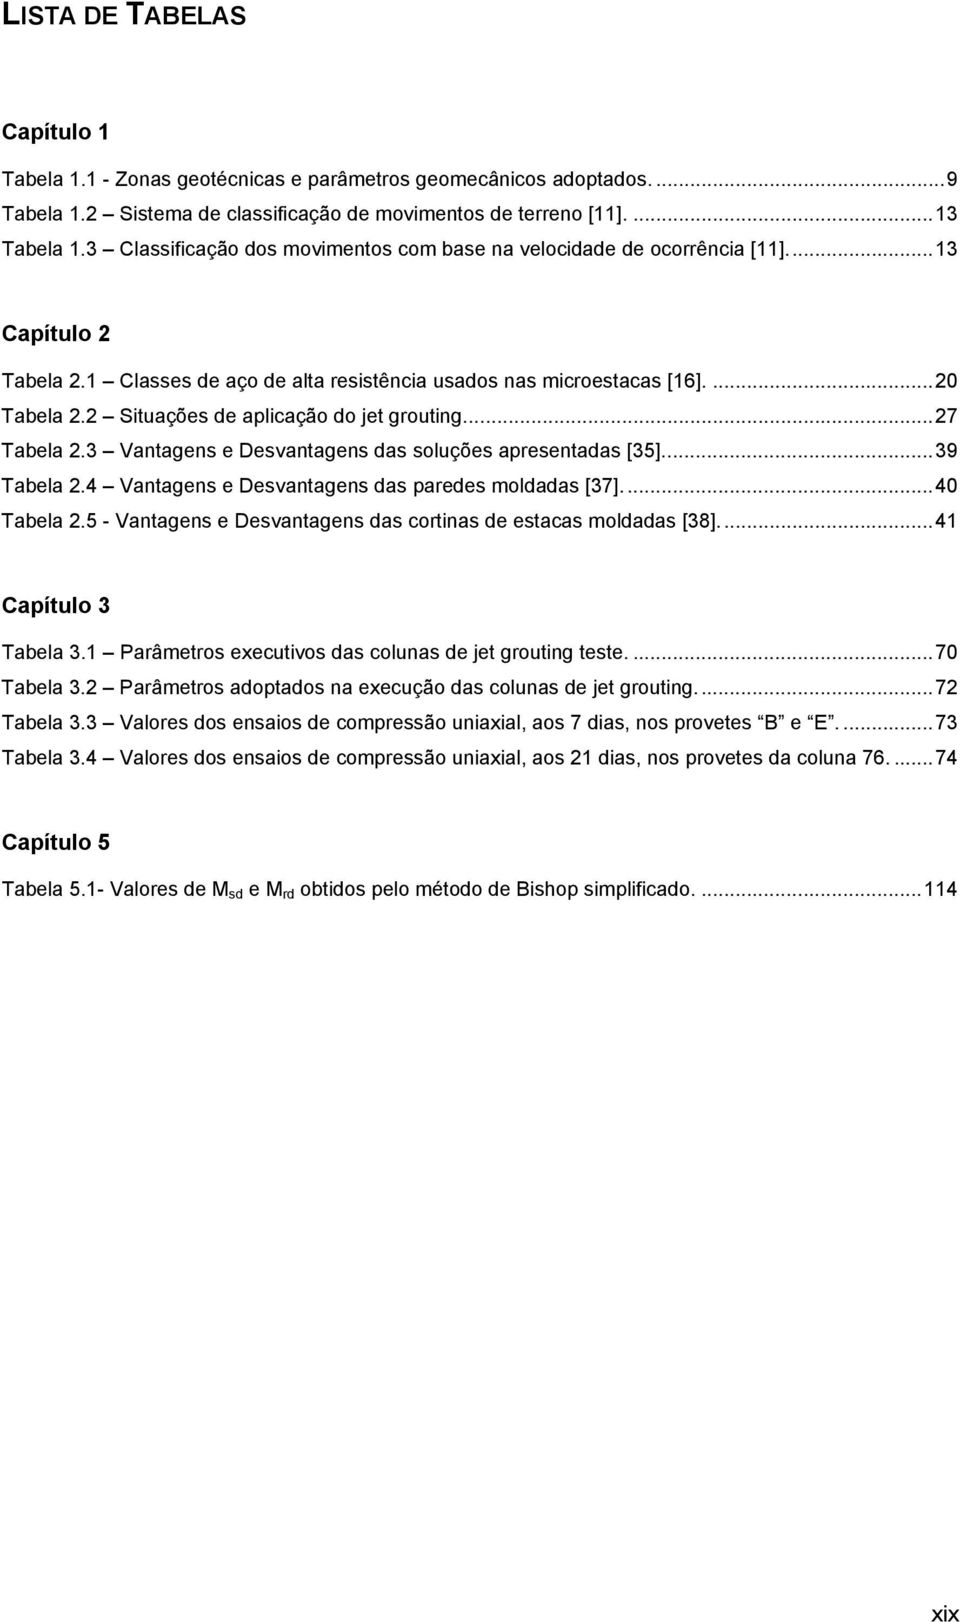 2 Situações de aplicação do jet grouting.... 27 Tabela 2.3 Vantagens e Desvantagens das soluções apresentadas [35]... 39 Tabela 2.4 Vantagens e Desvantagens das paredes moldadas [37]... 40 Tabela 2.